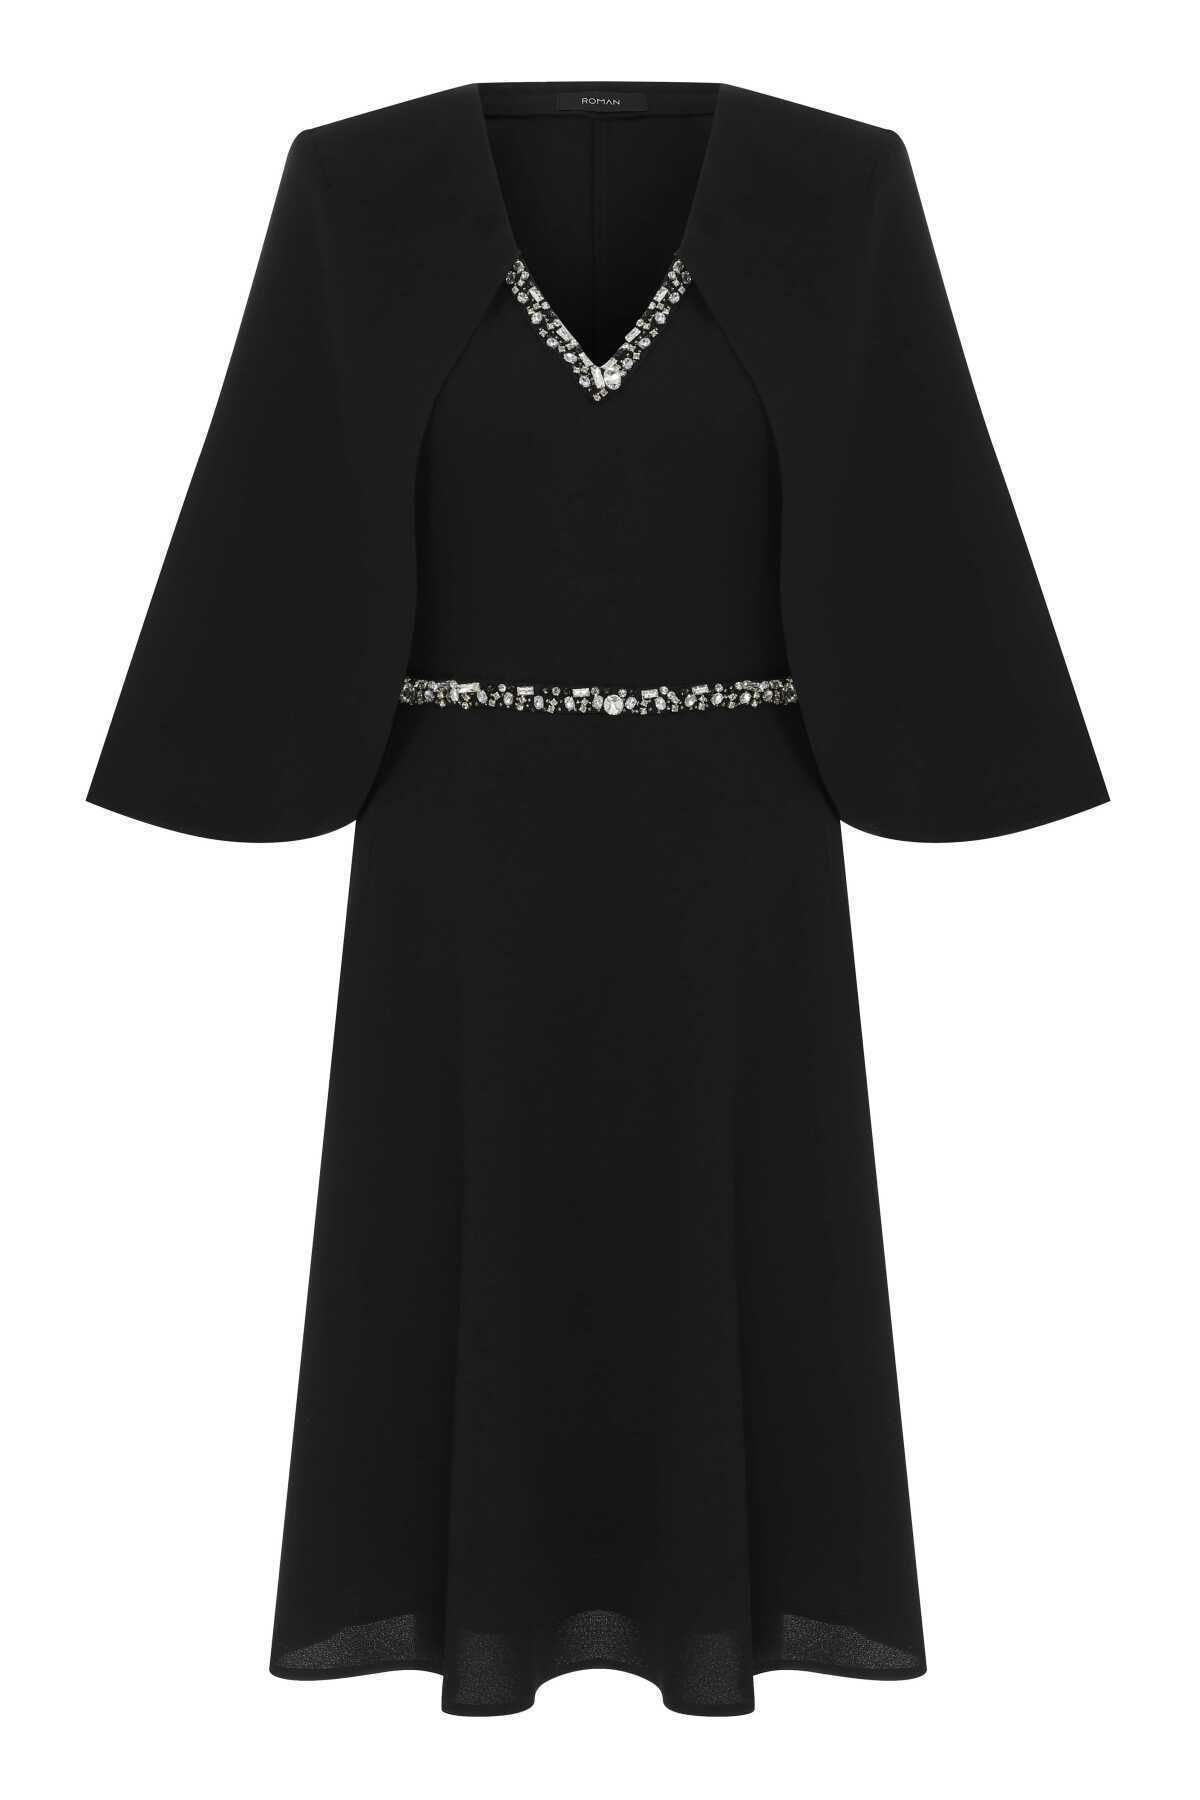 Roman Taşlı Abiye Elbise Siyah K2311306_001